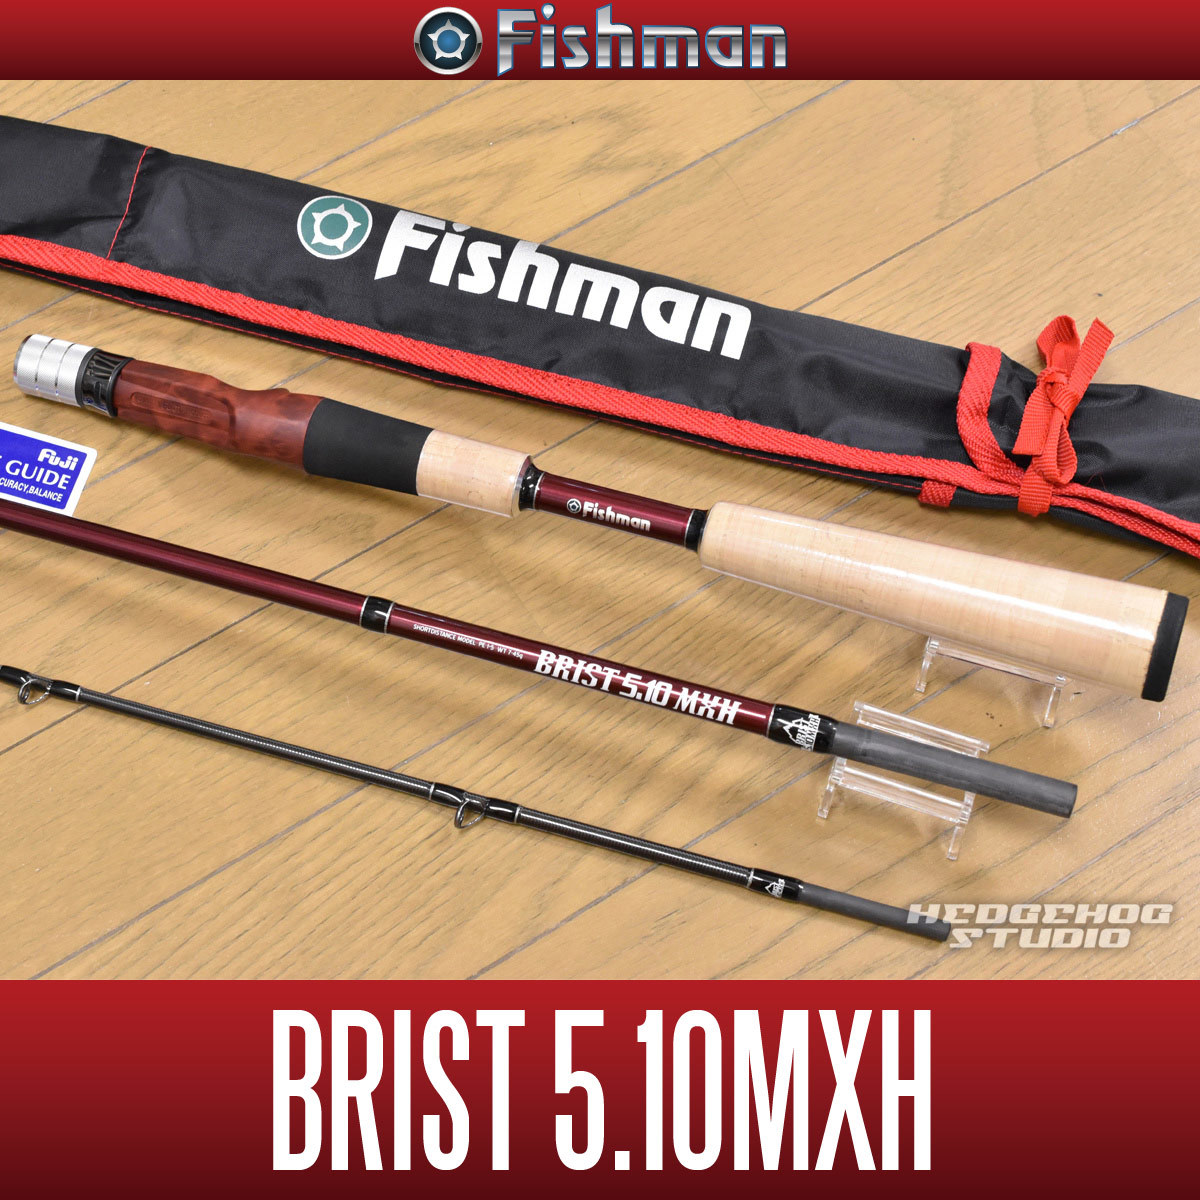 新着商品 [Fishman/フィッシュマン] BRIST 5.10MXH シマノ